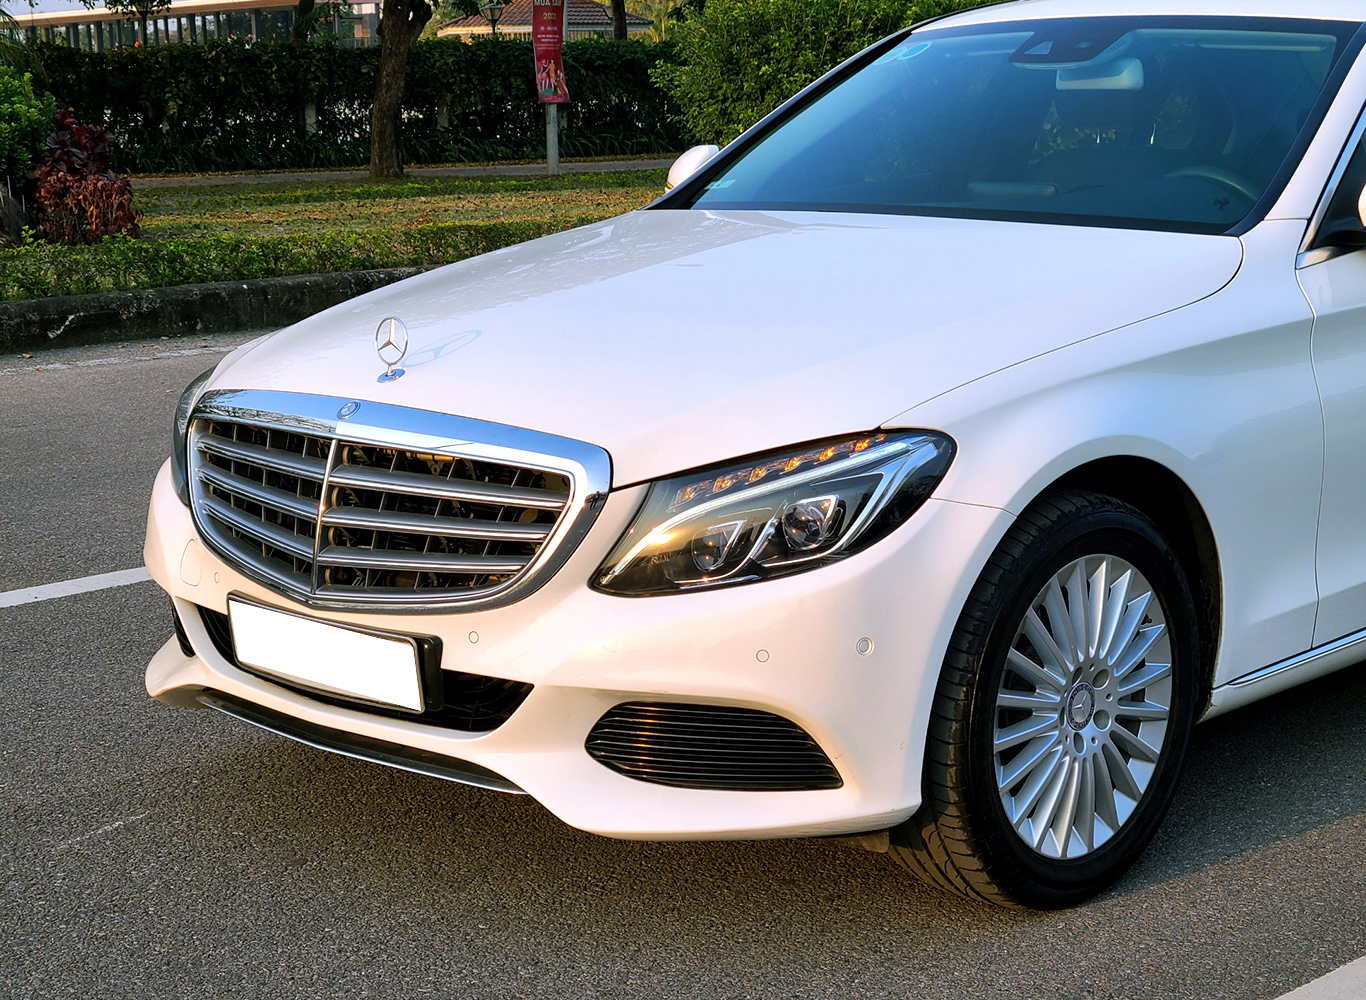 Mercedes C250 đời 2015 rao bán giá 700 triệu đồng người mua nên cảnh giác   Báo Dân trí